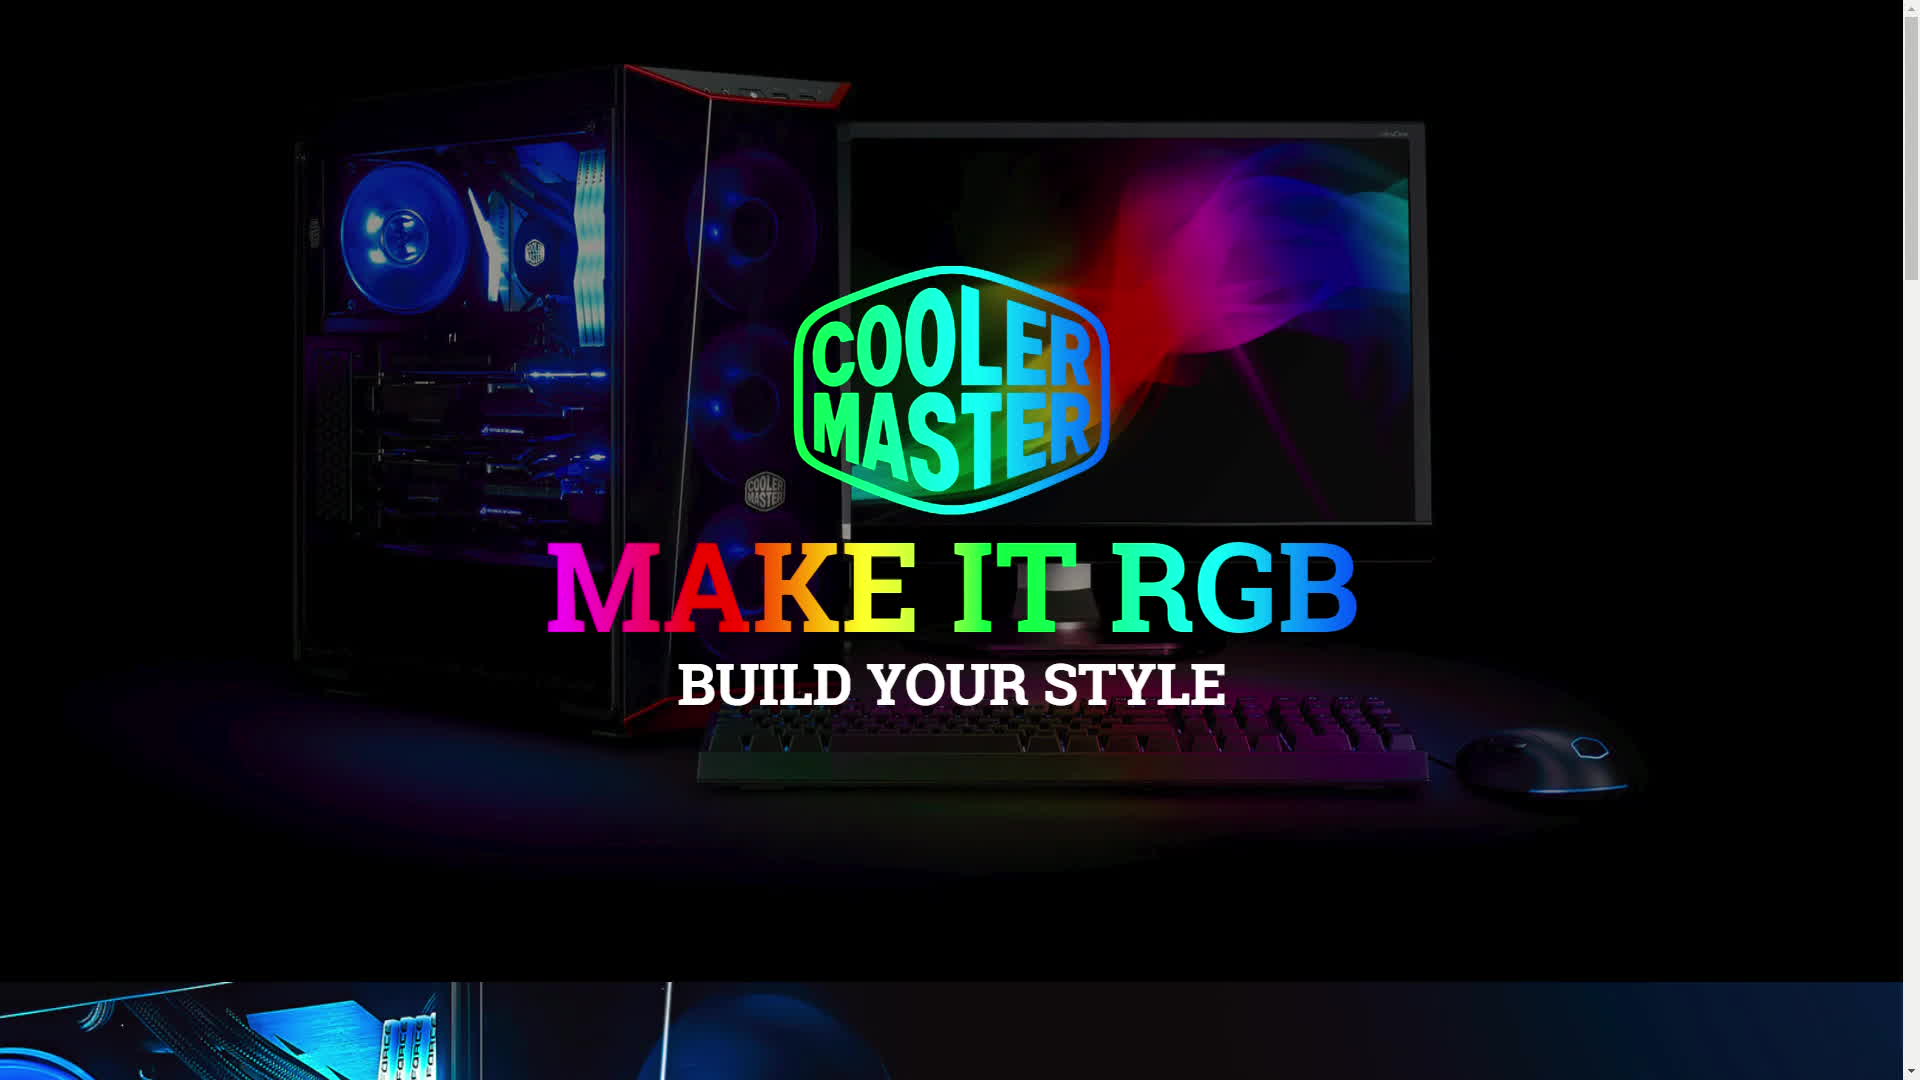 Make It Rgb Cooler Master - Cooler Master , HD Wallpaper & Backgrounds